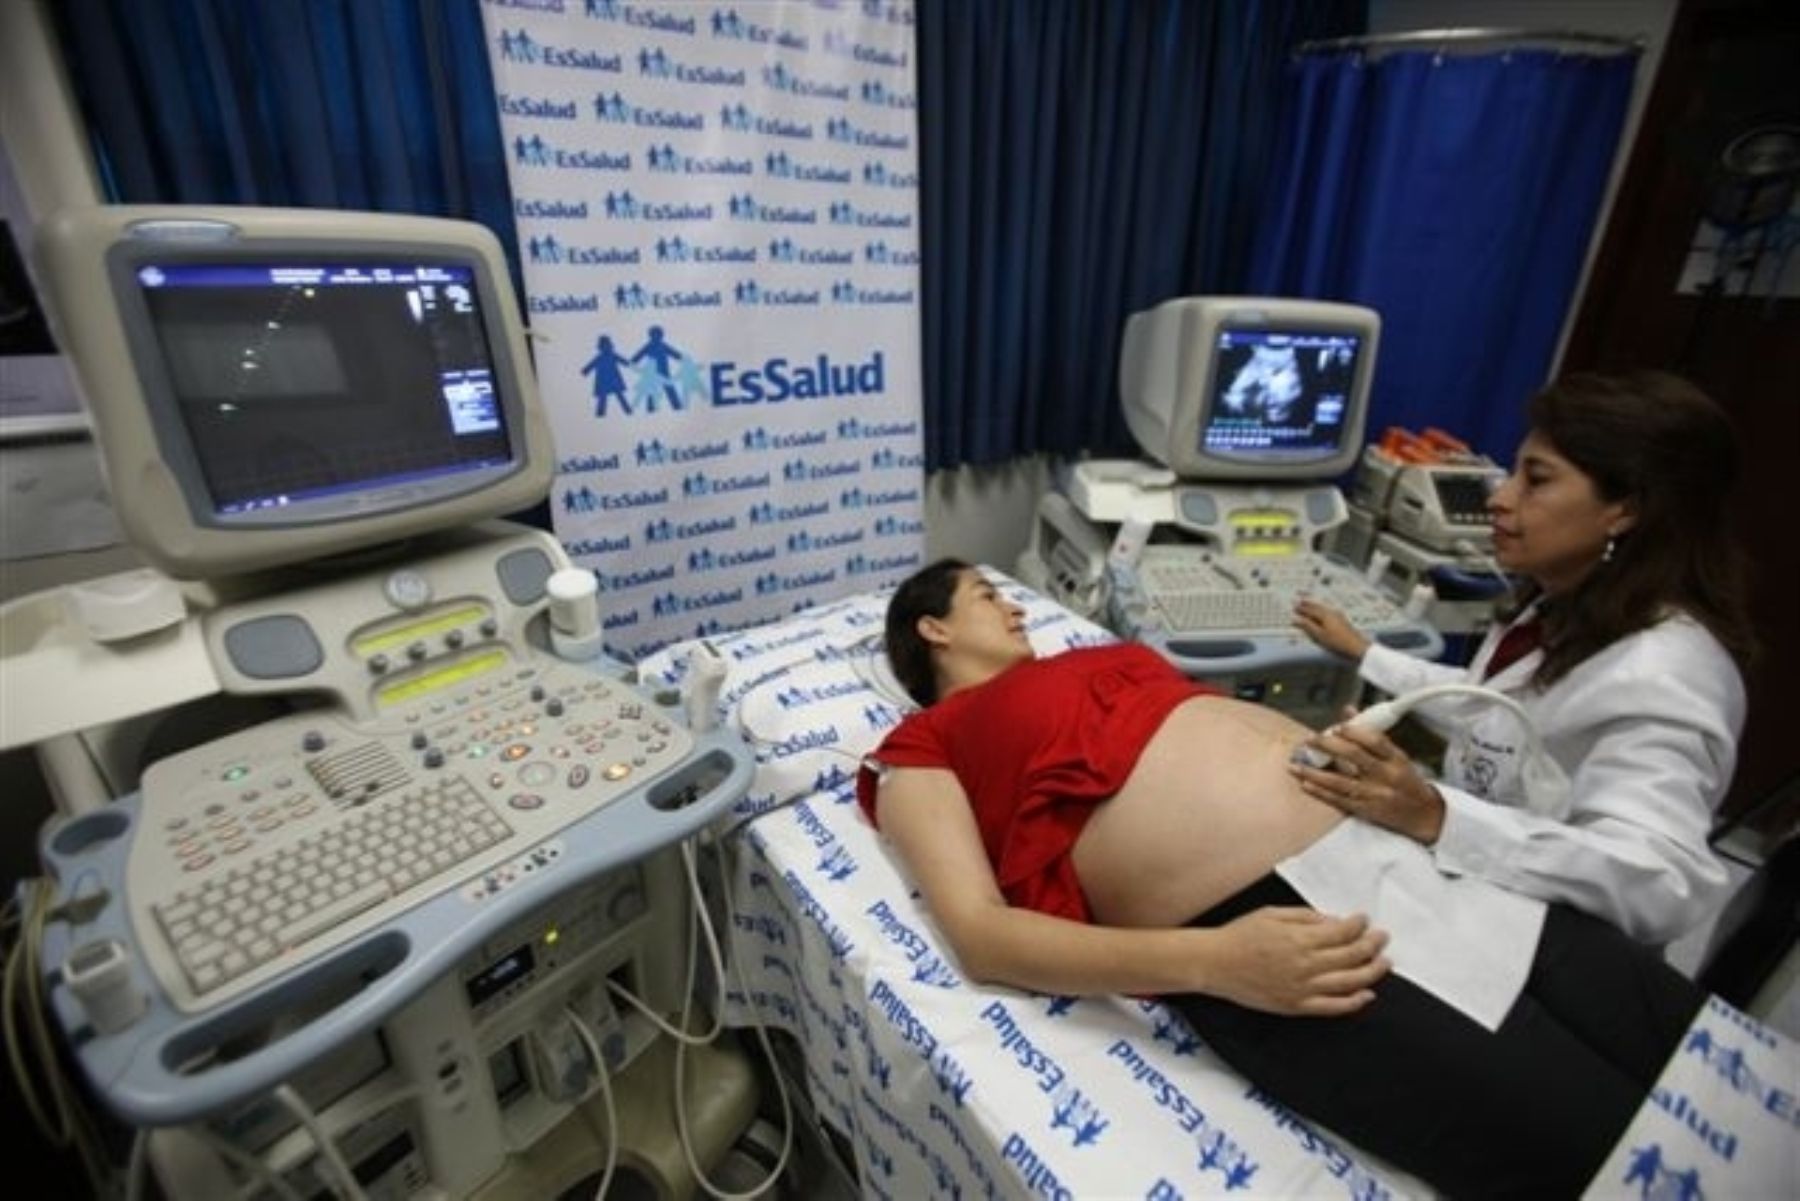 Moderno ecocardiógrafo posee el Instituto Nacional del Corazón de EsSalud, el cual permite advertir si un bebé en gestación presenta problemas cardiovasculares. Foto: EsSalud.